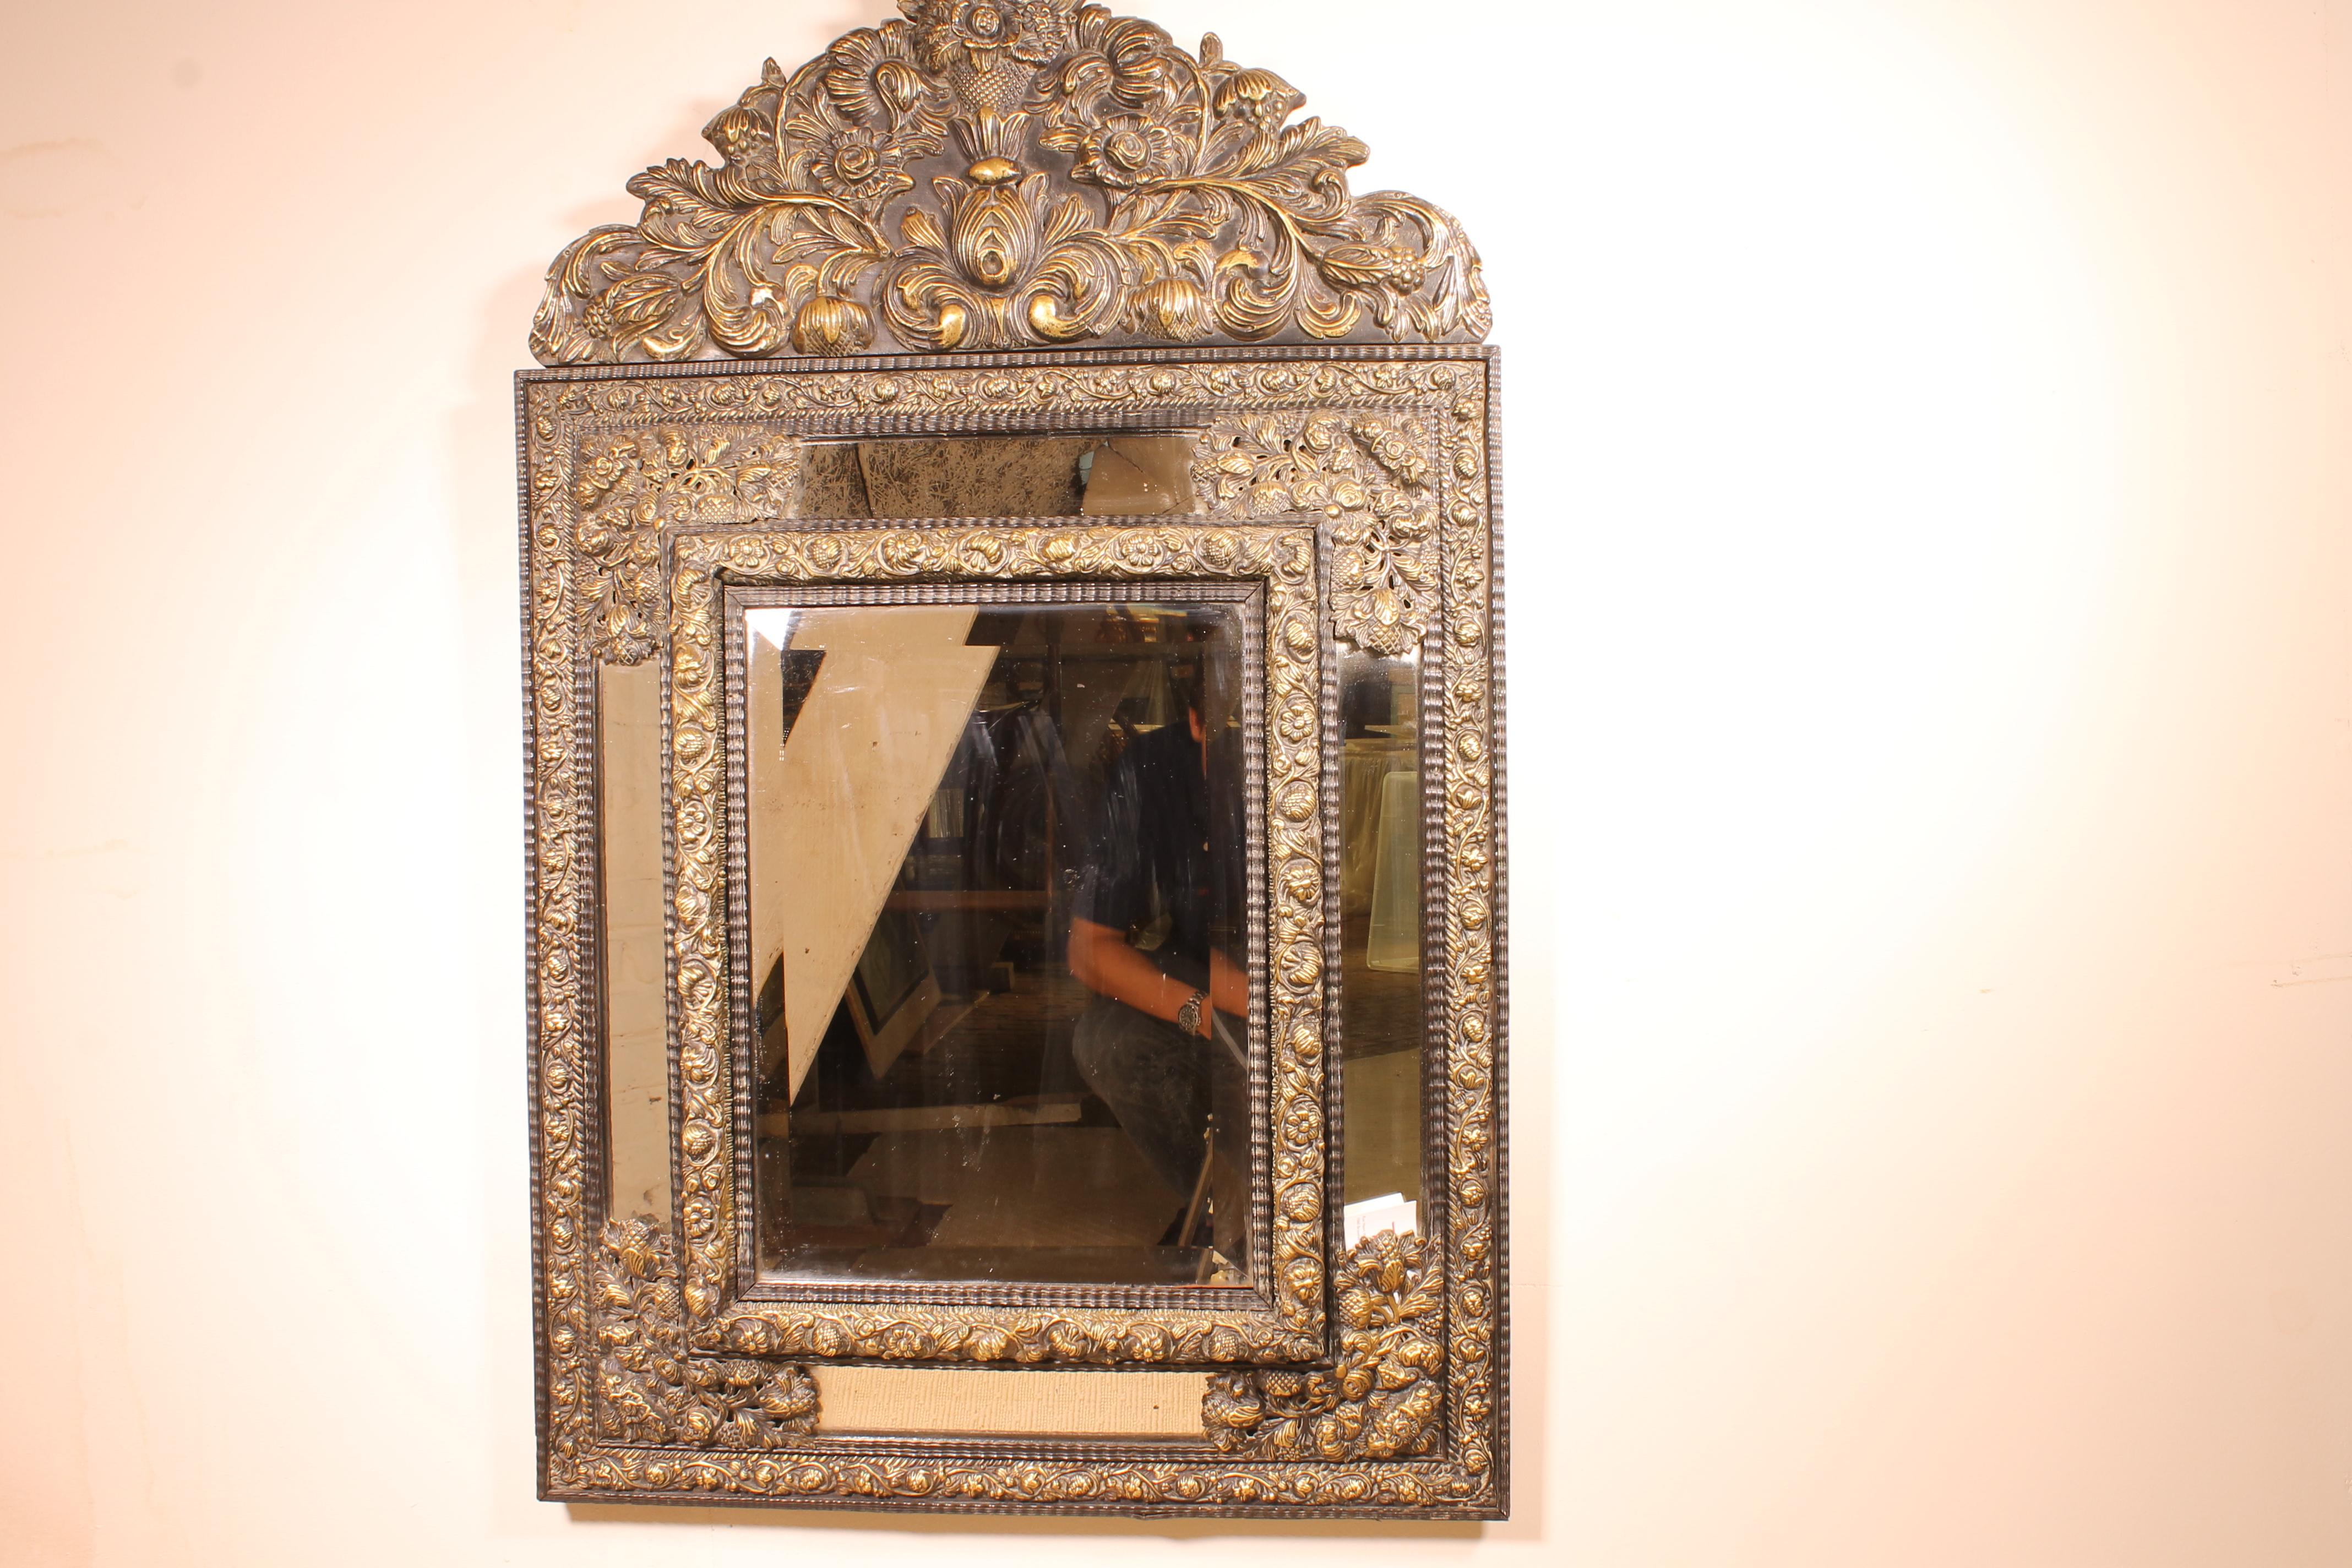 Schöne Spiegel aus den Niederlanden des 19. Jahrhunderts in Messing
Der Spiegel ist reichlich mit Messingmotiven verziert, die eine Vase mit Blumen, Blüten und Blättern zeigen.
Schöner Spiegel mit schönen Proportionen und in perfektem Zustand.